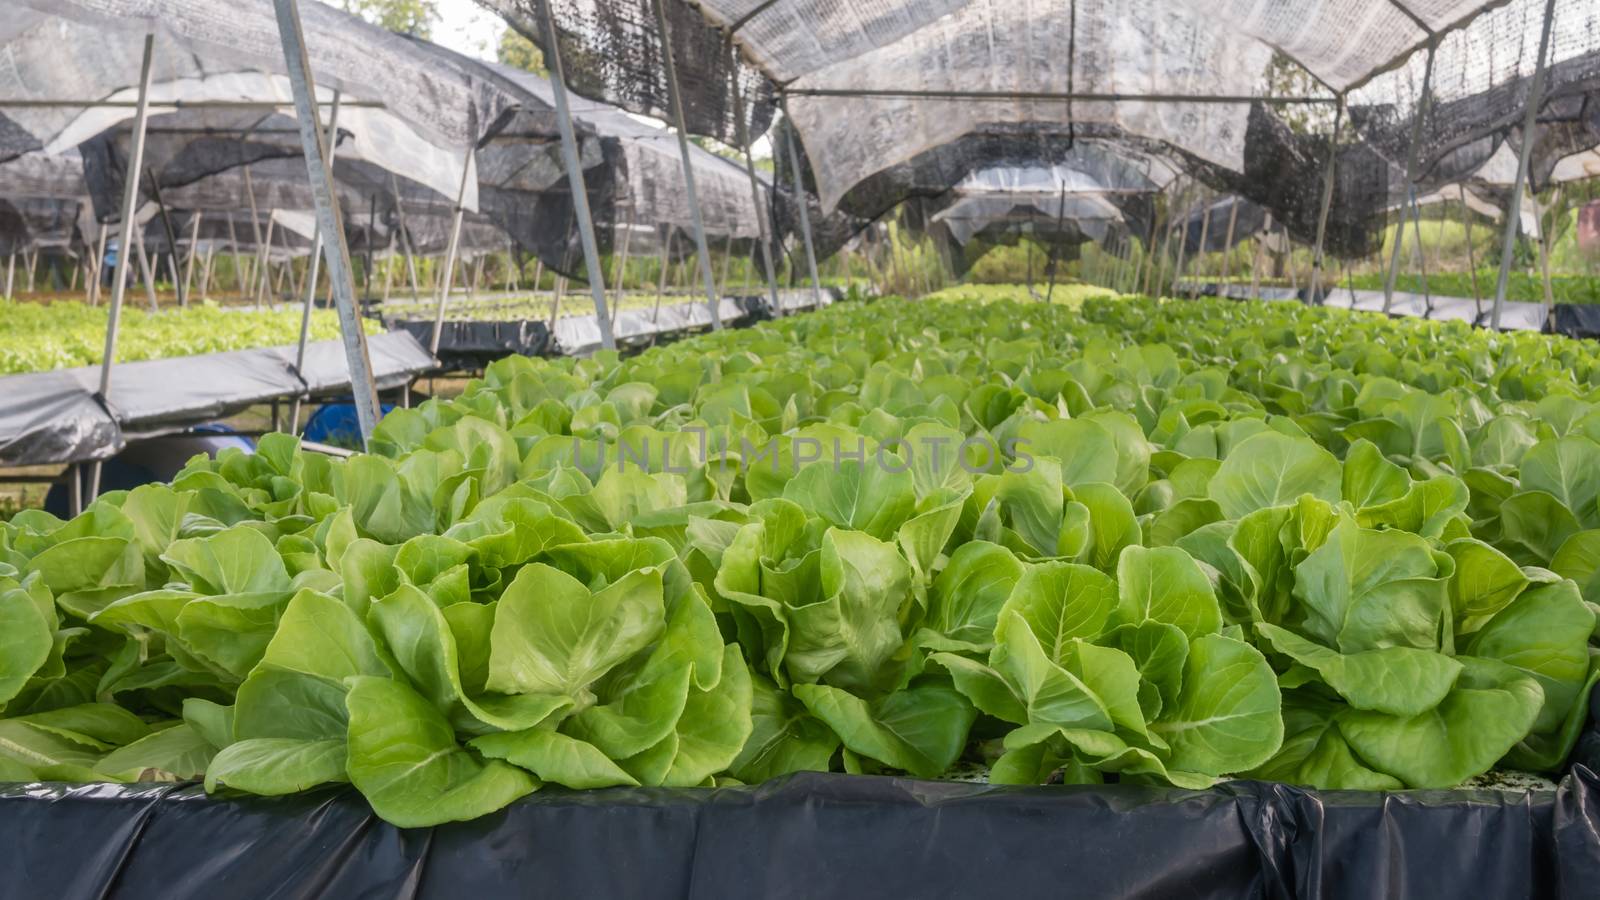 Hydroponic butterhead lettuce growing in cultivation farm